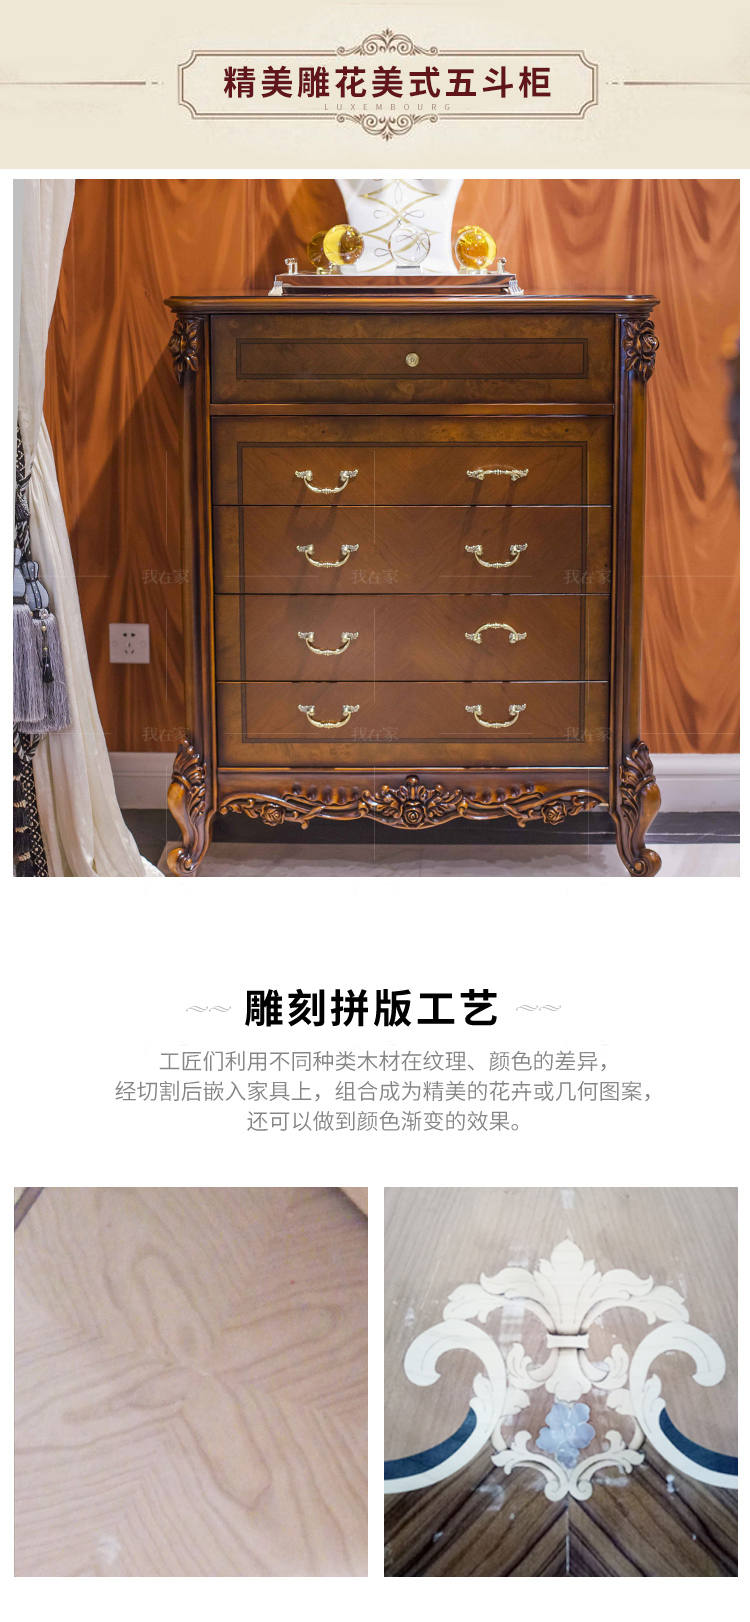 古典欧式风格马可斯五斗柜的家具详细介绍